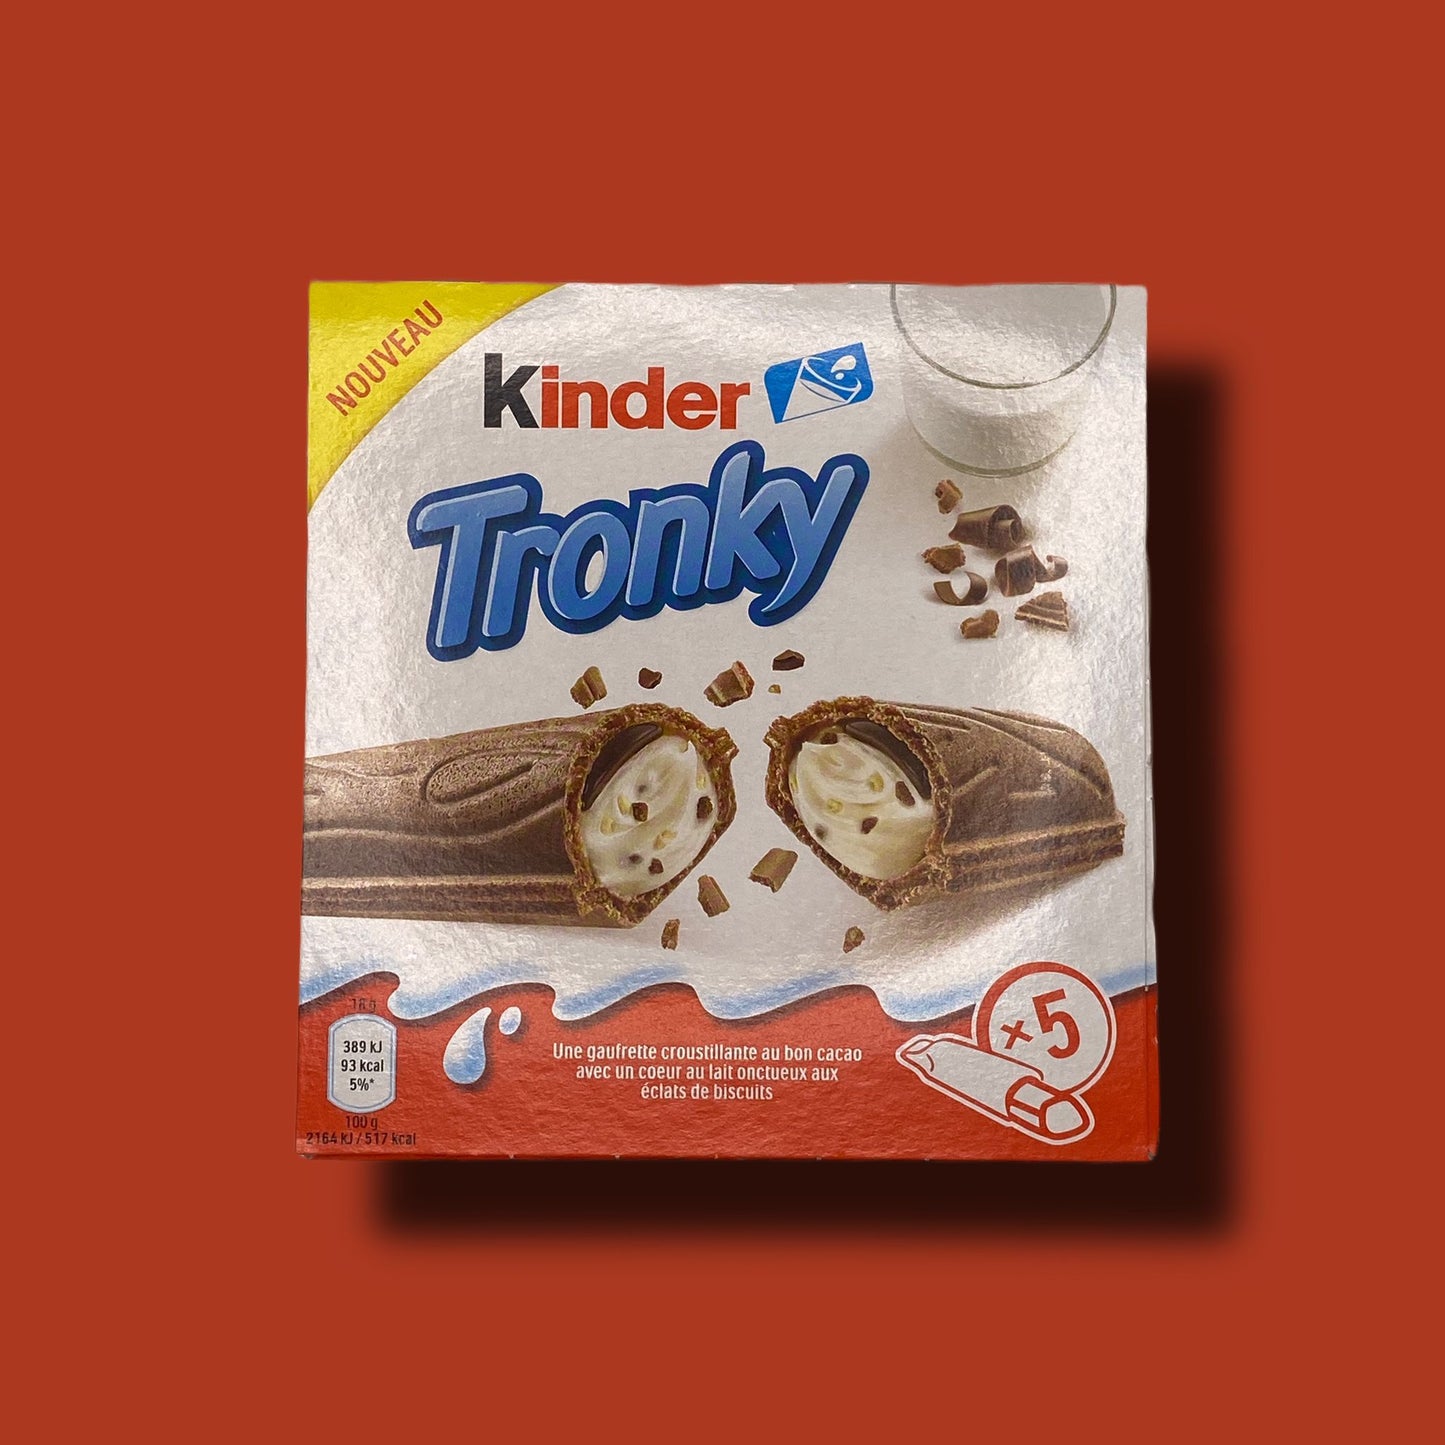 Kinder - Tronky